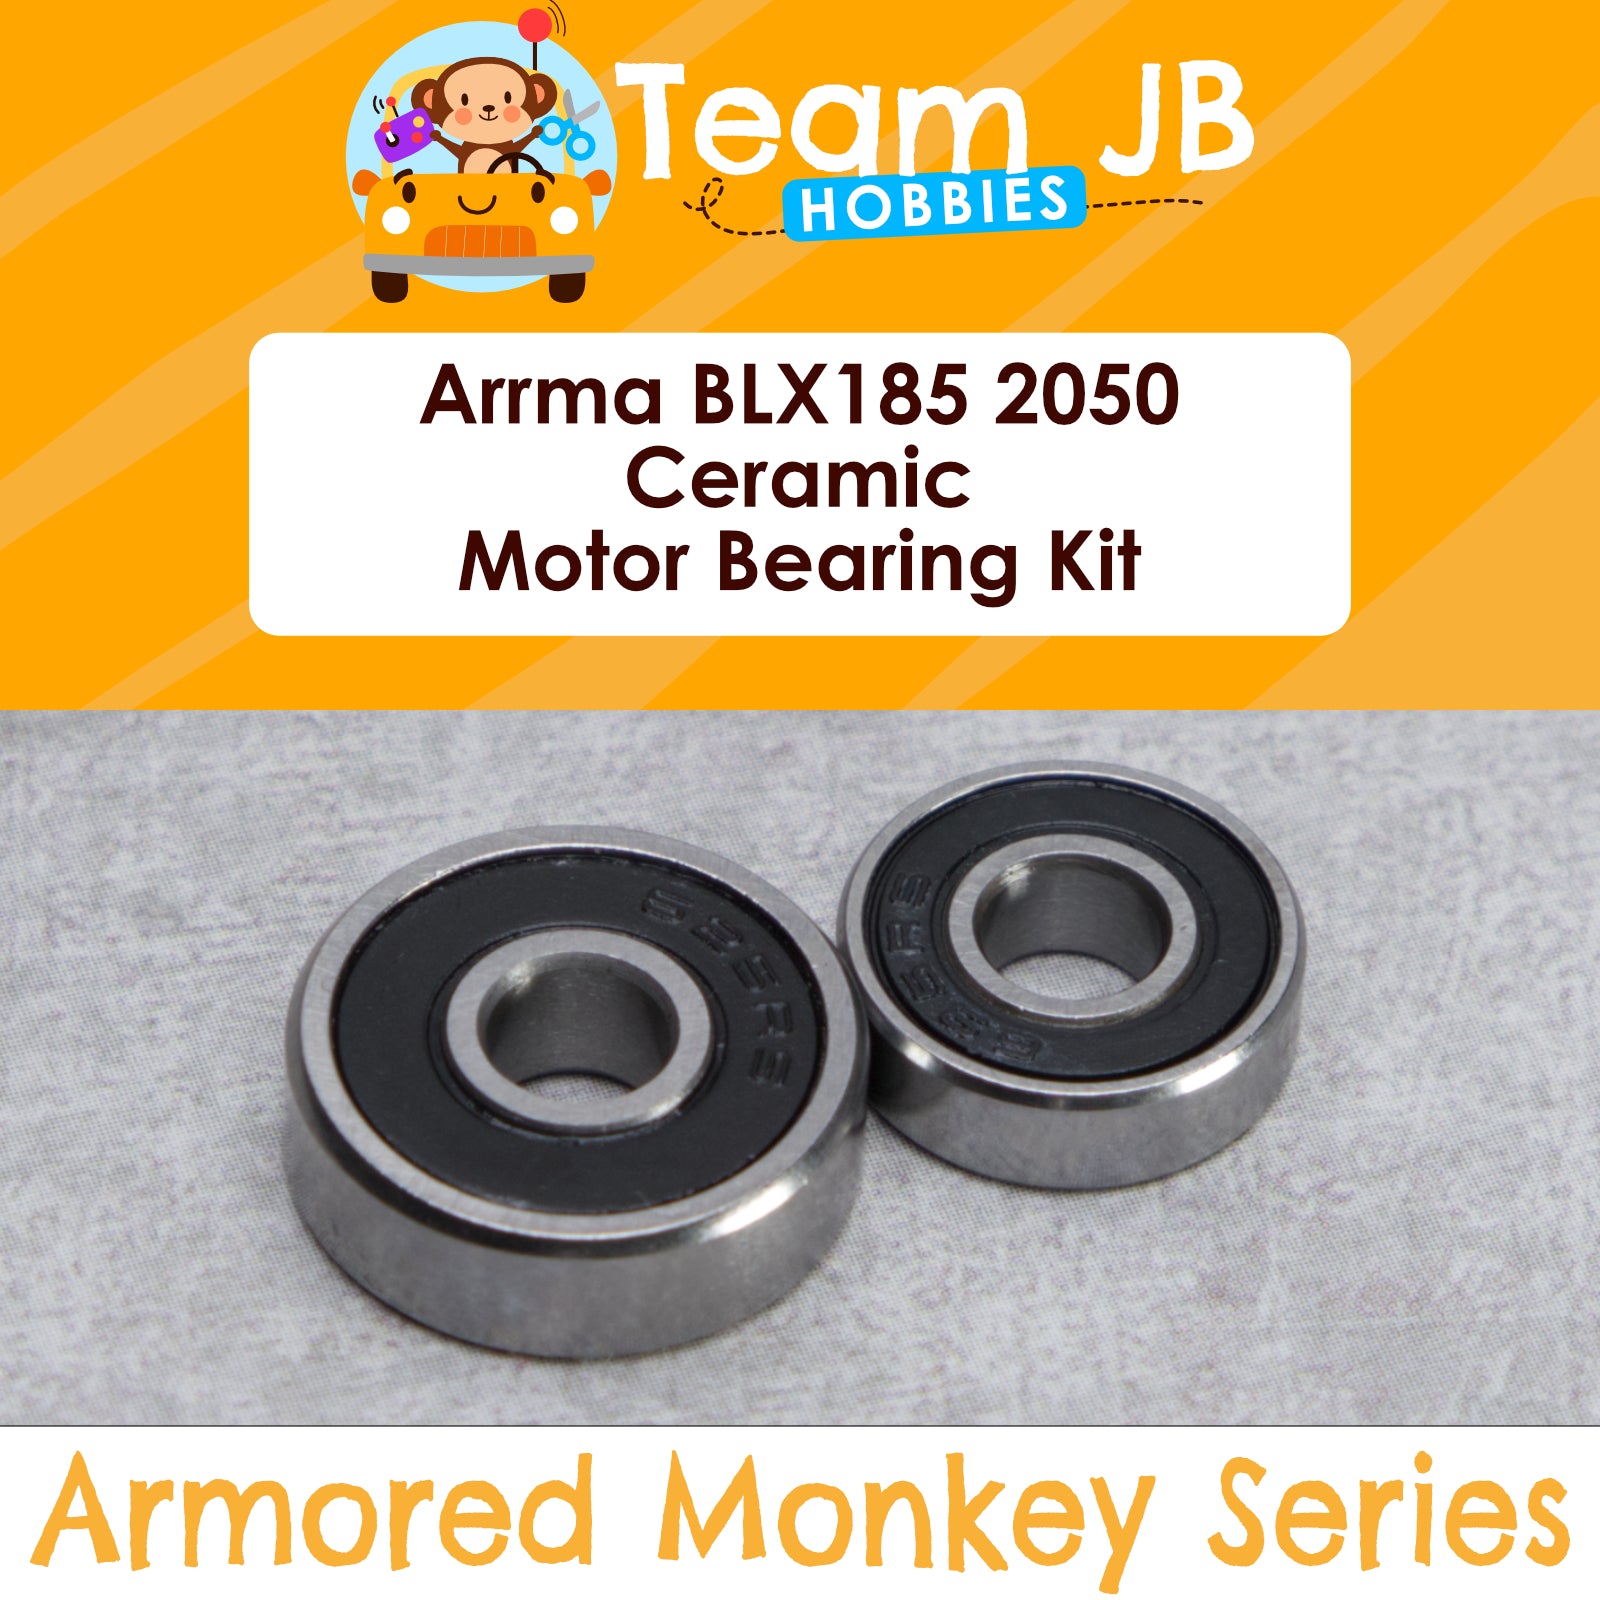 Arrma BLX185 2050  - 6s BLX Models - Ceramic - Engine / Motor Bearing Kit